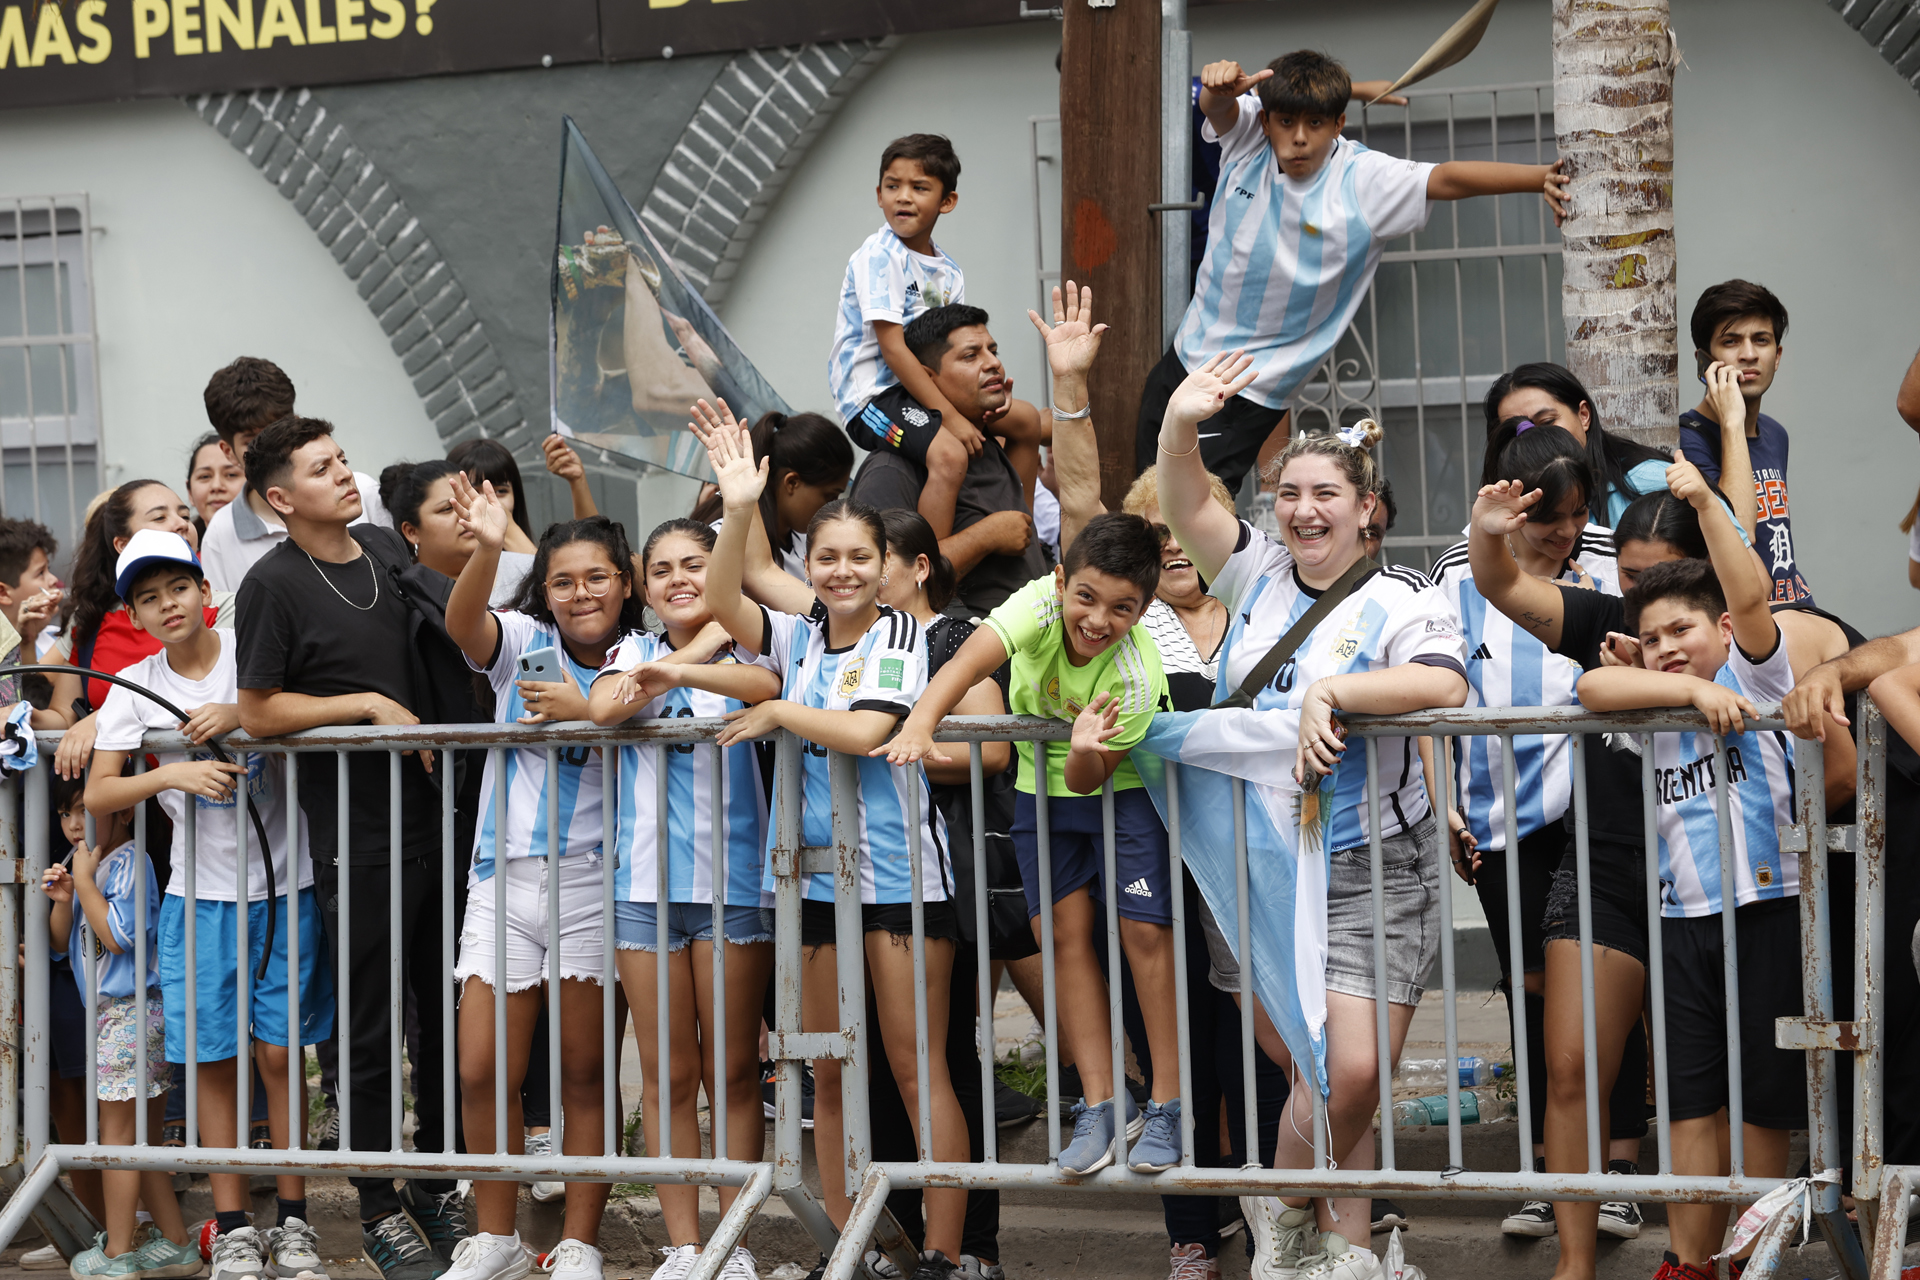 La selección argentina generó una revolución y la gente saludó a los jugadores en las calles